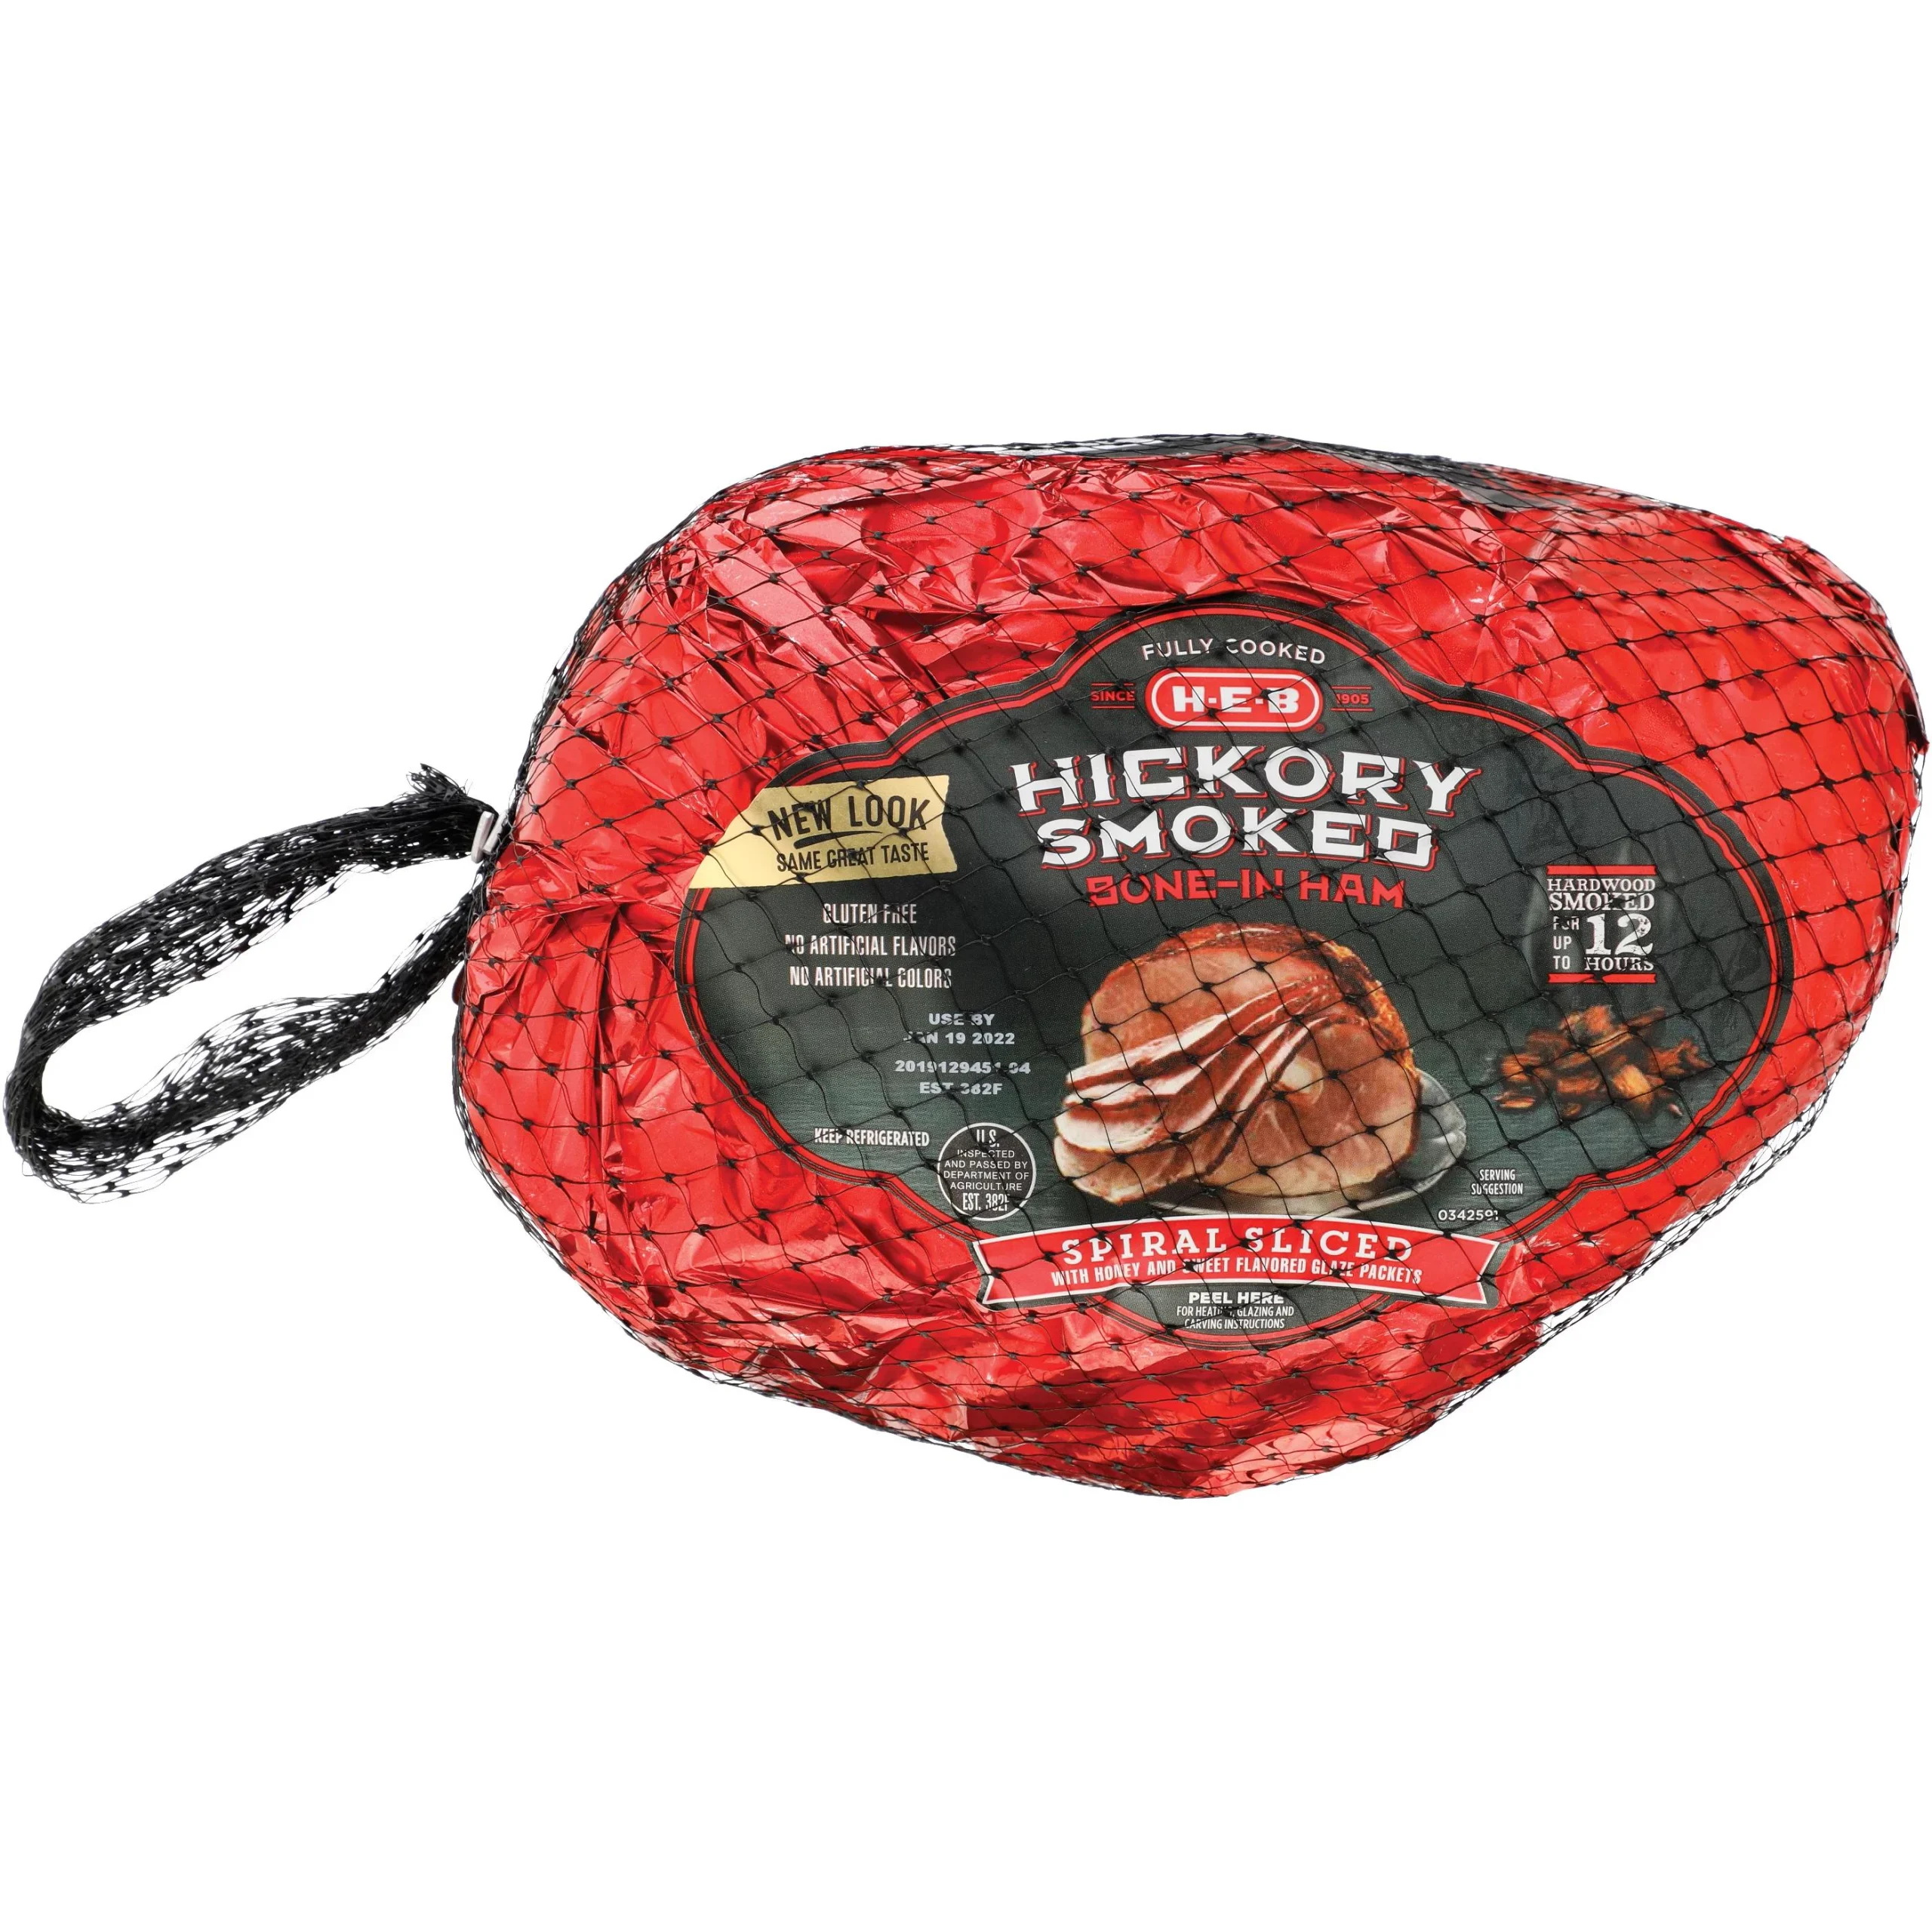 hickory smoked honey ham - What is hickory smoke ham